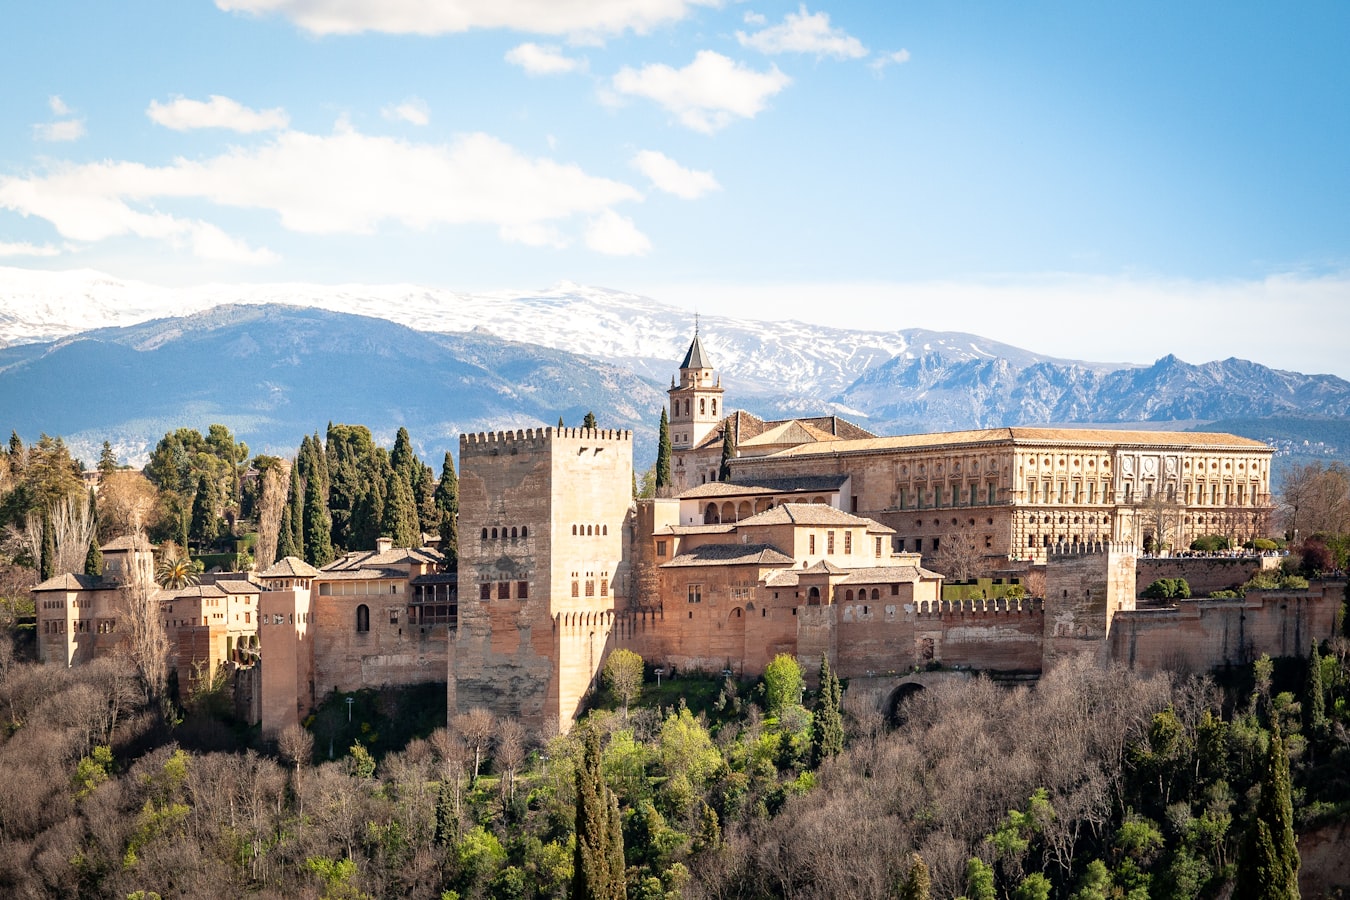 alhambra in Granada, Spain